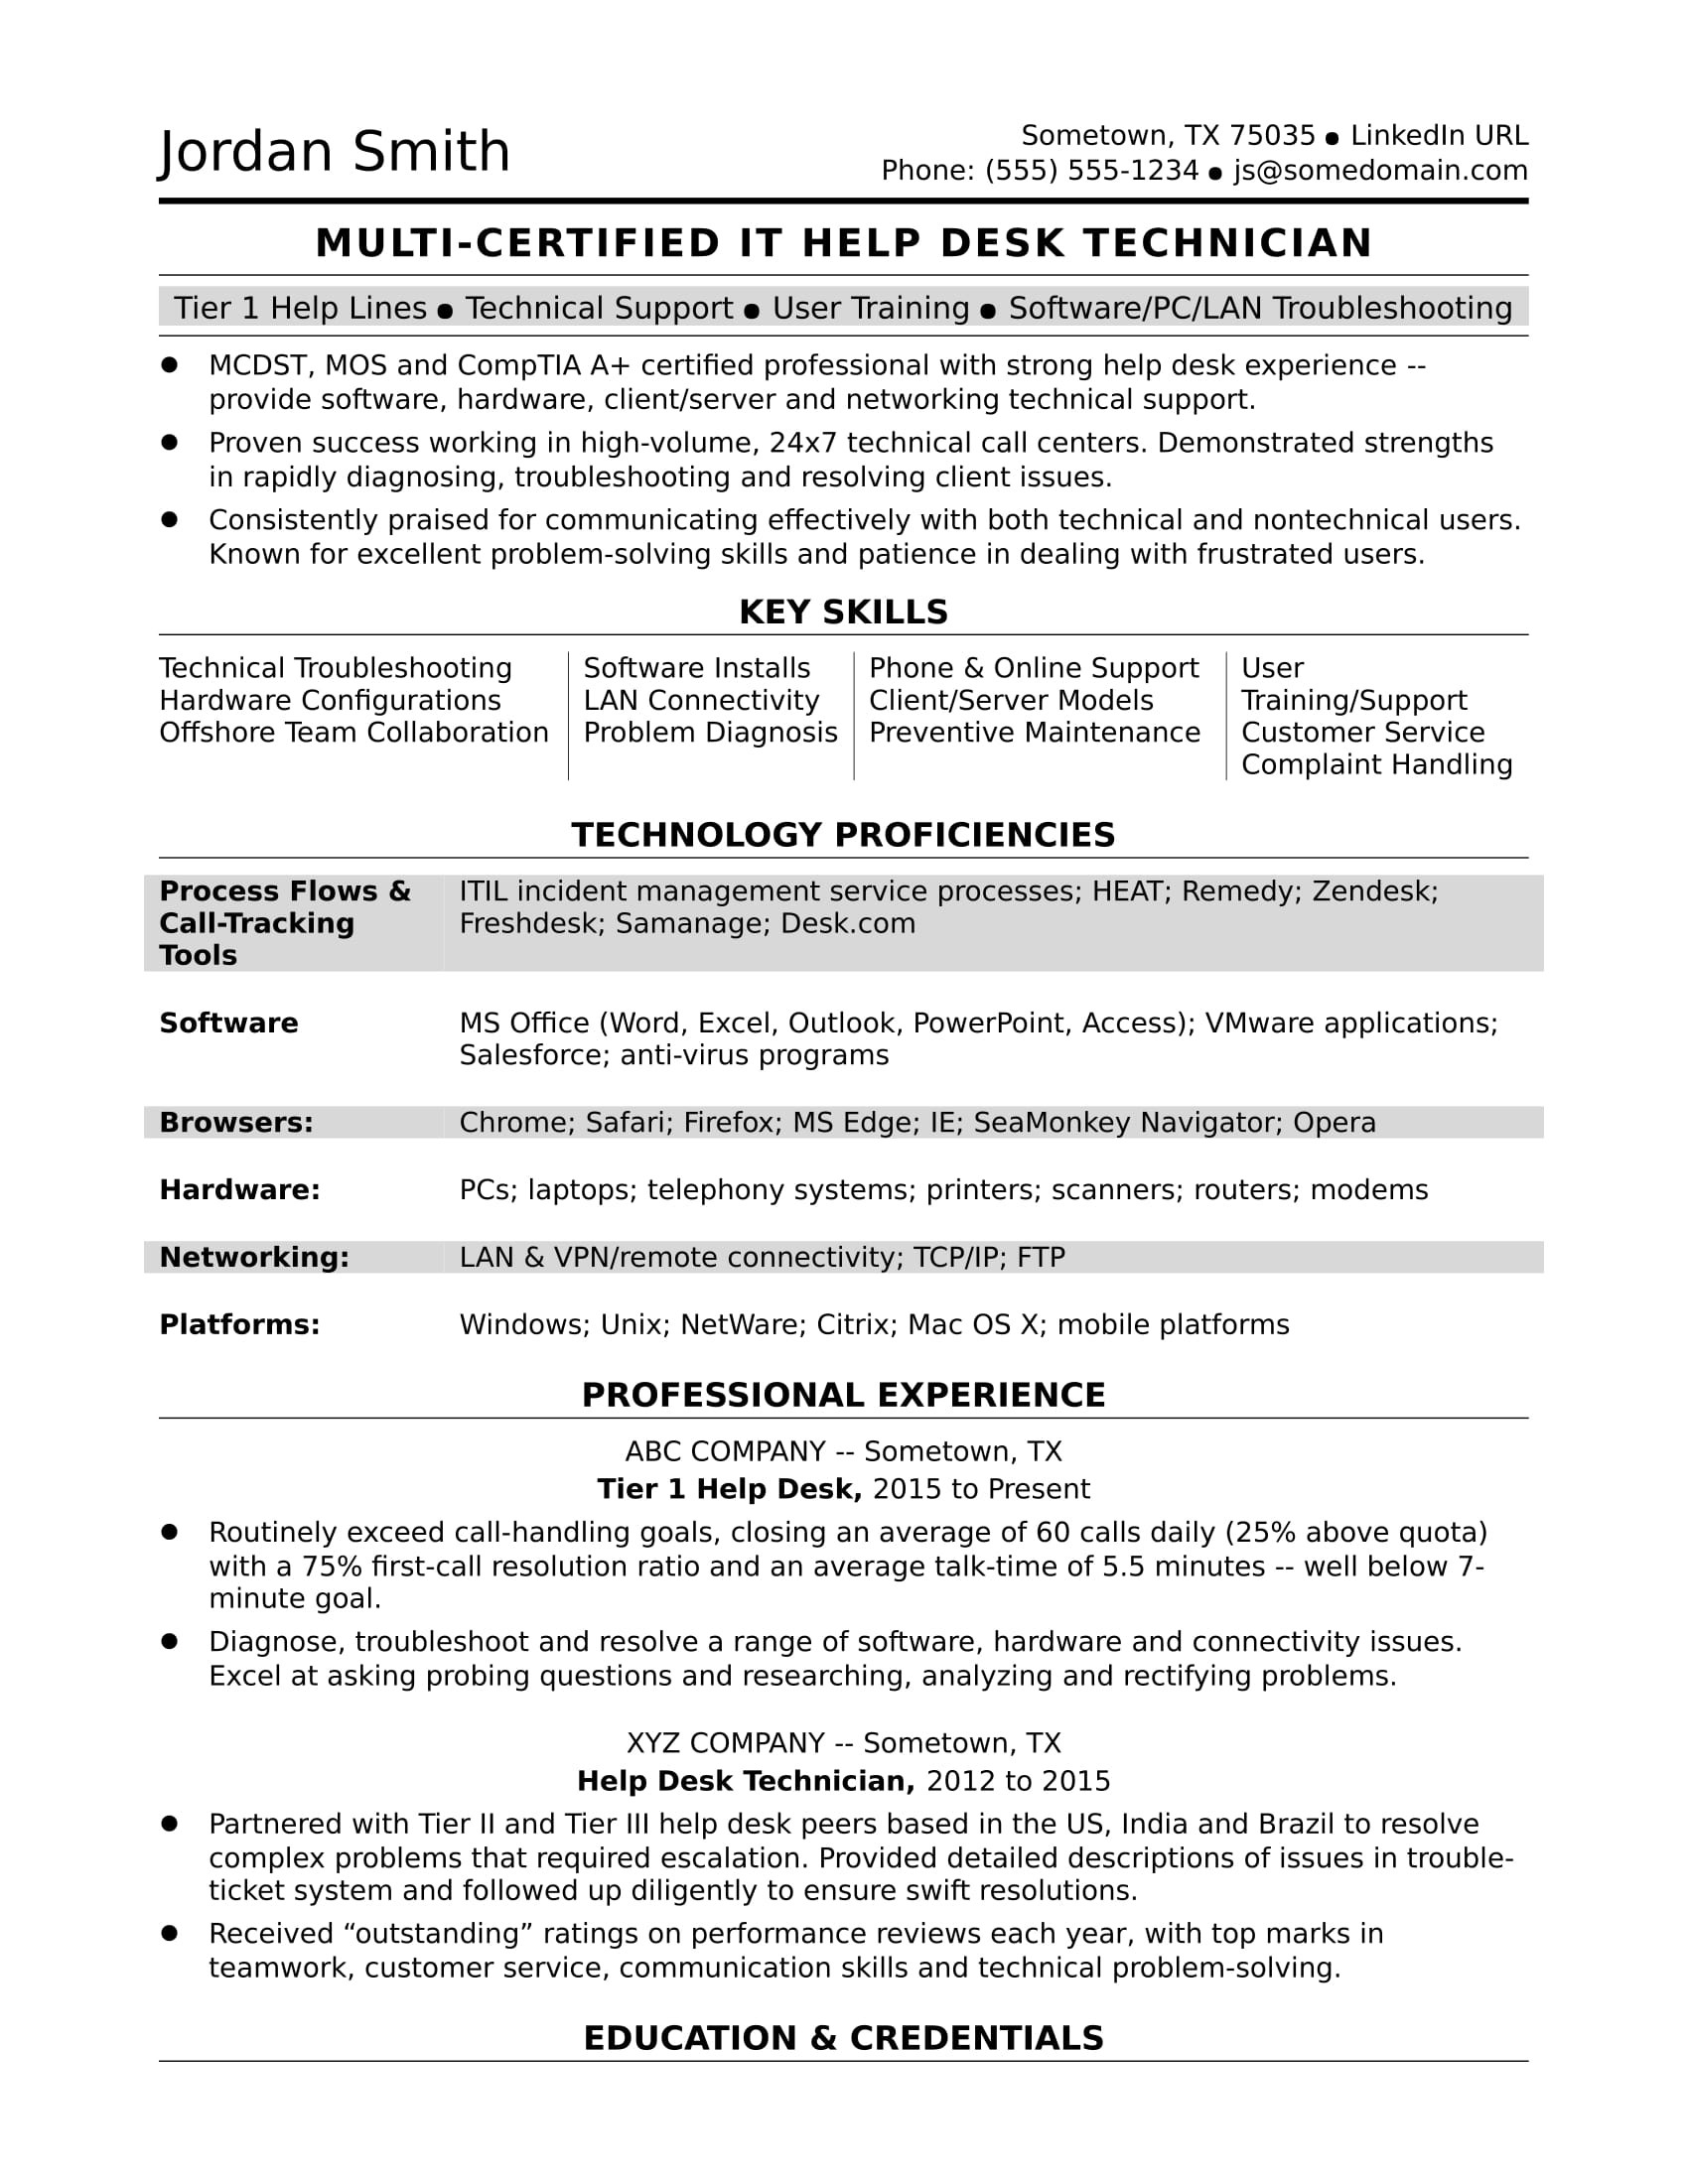 Help Desk Tier 1 Sample Resume Sample Resume for A Midlevel It Help Desk Professional Monster.com